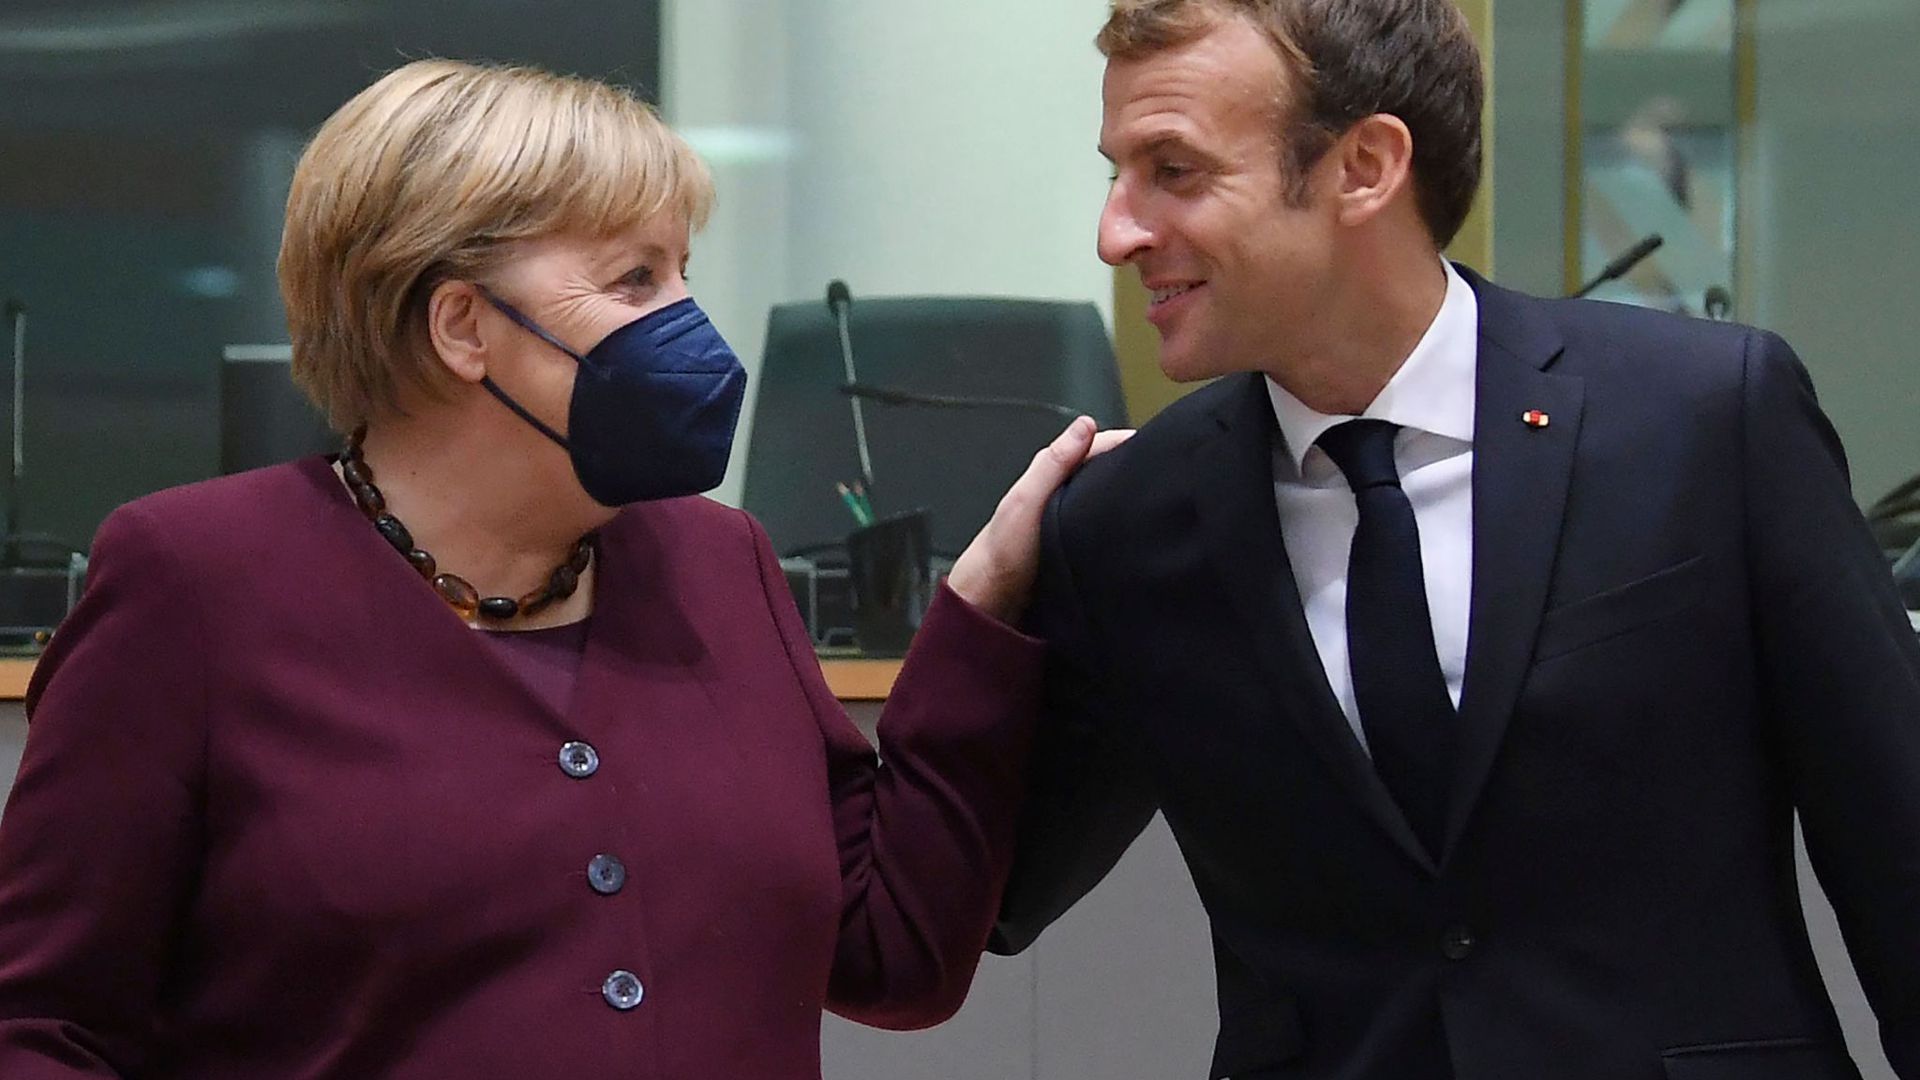 Emmanuel Macron, Präsident von Frankreich, begrüßt Bundeskanzlerin Angela Merkel (CDU) am zweiten Tag eines EU-Gipfels.